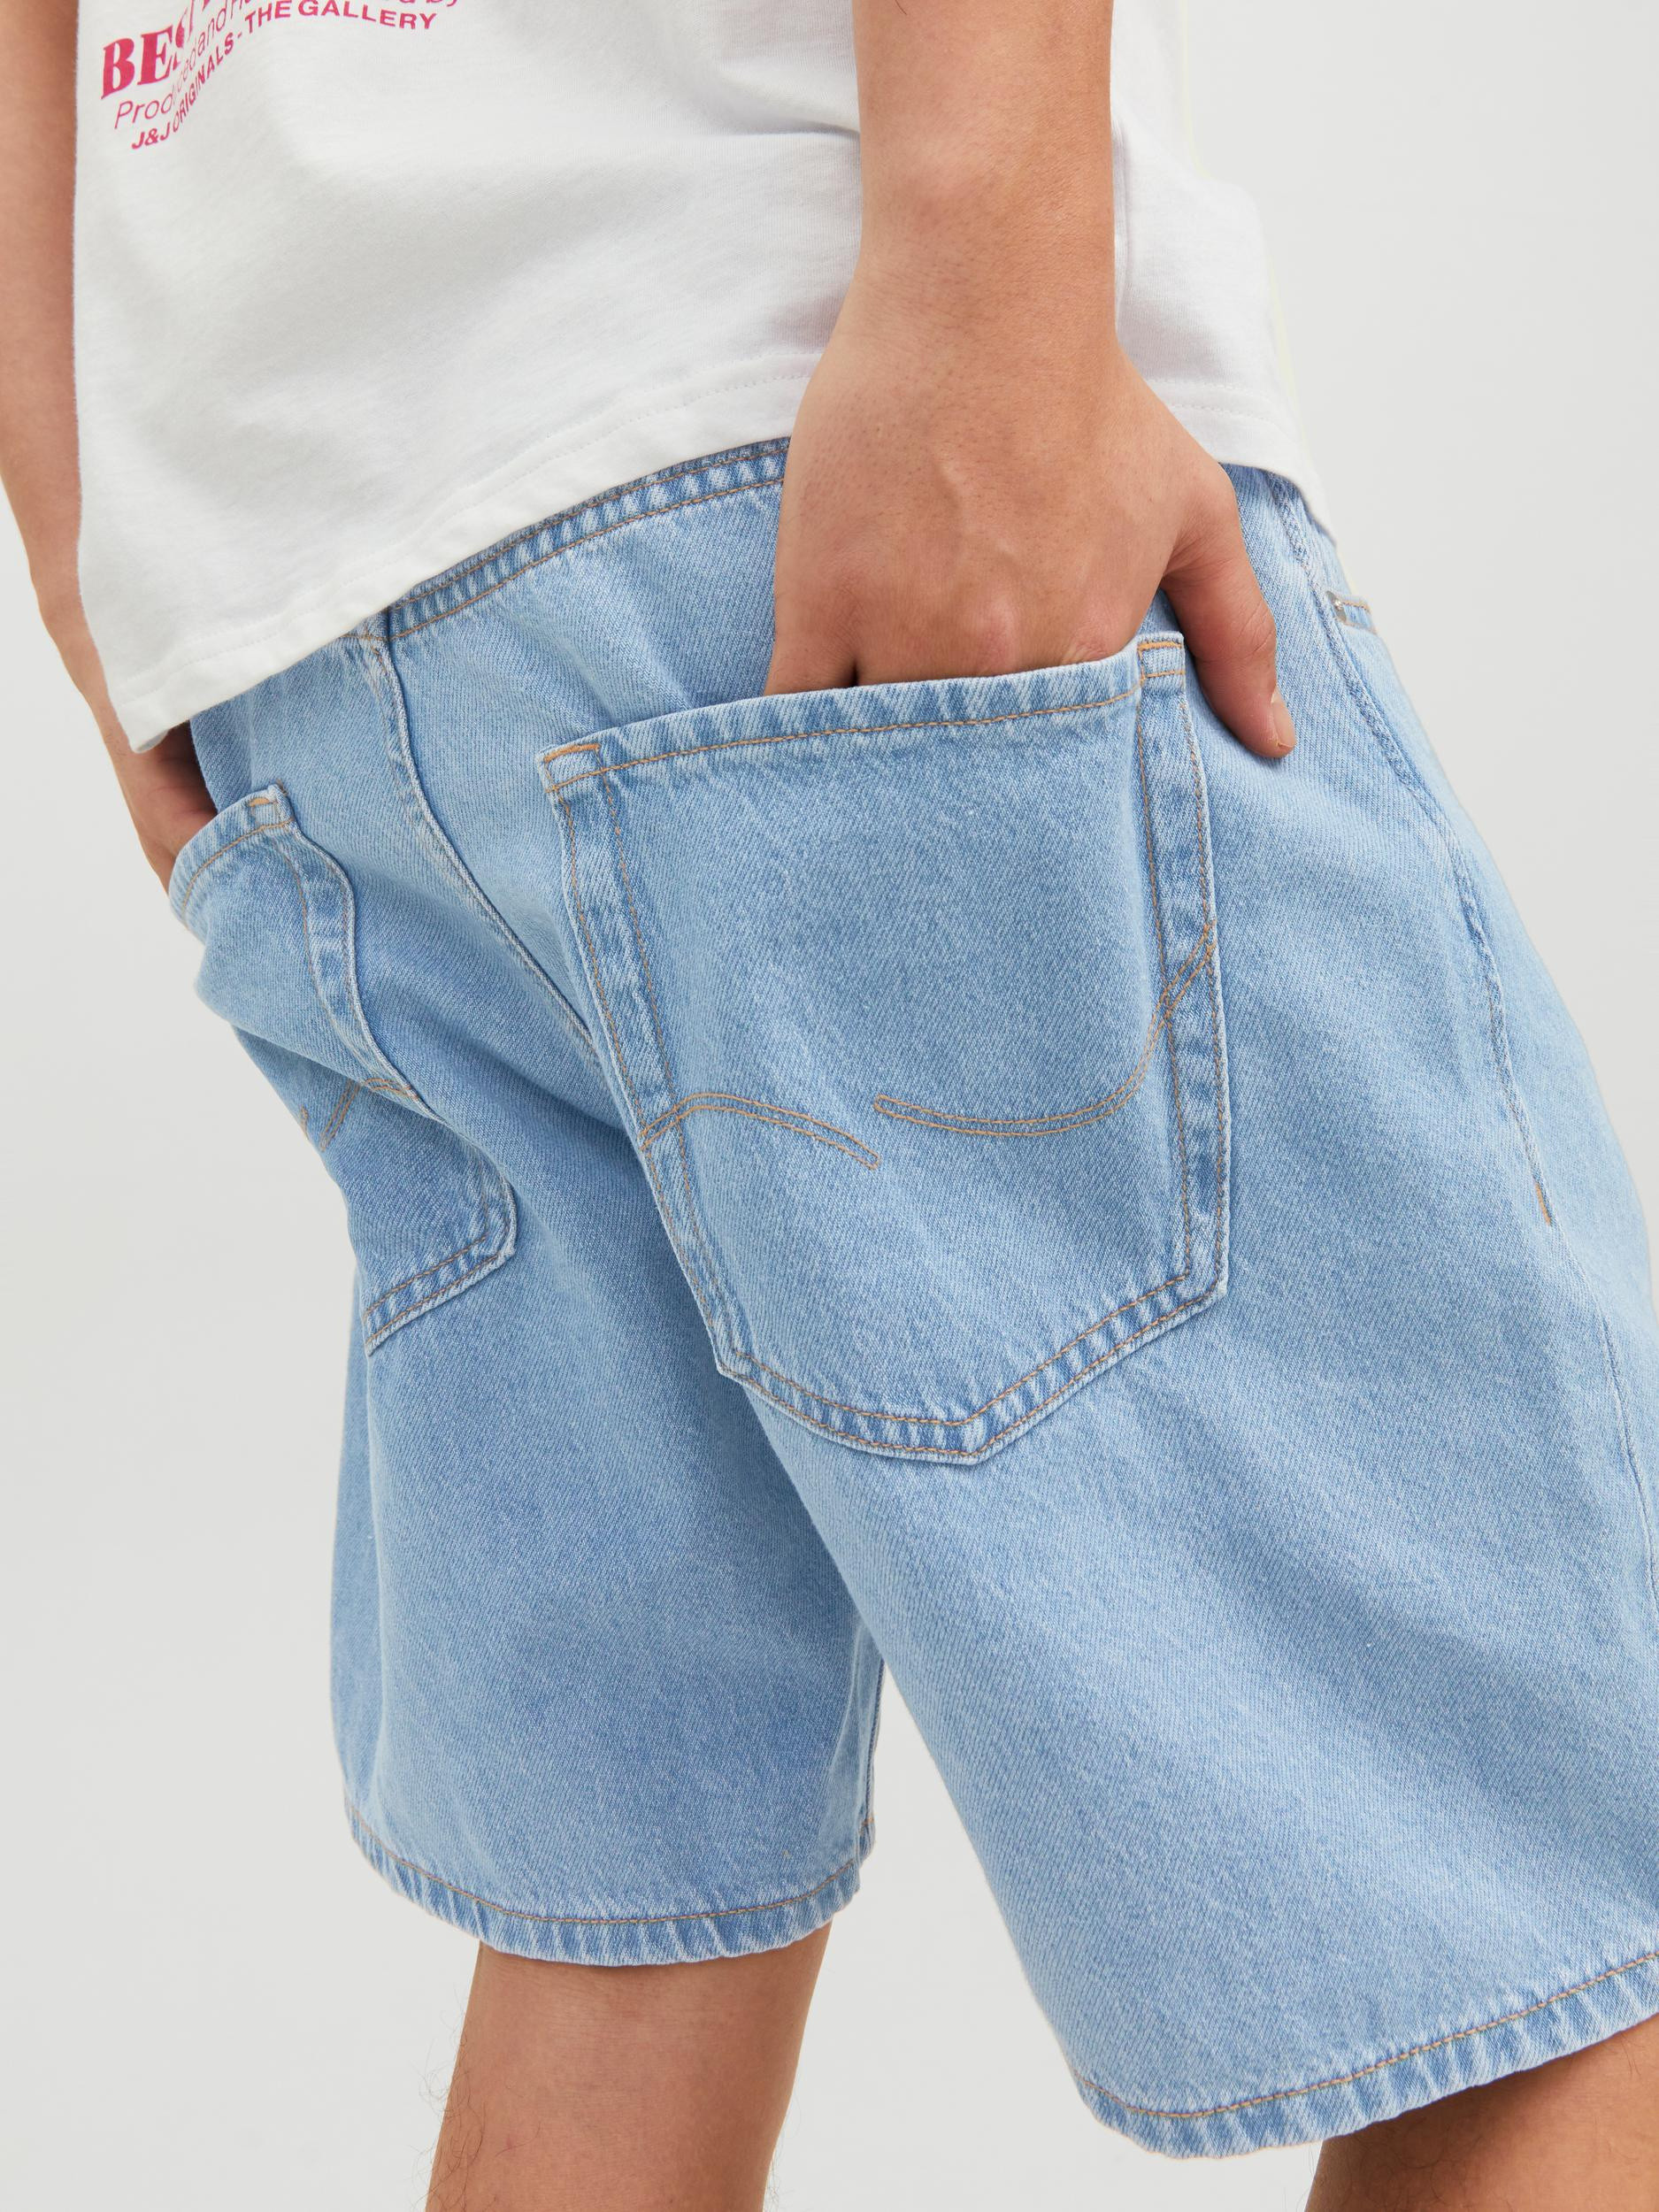 Jack & Jones - Five-pocket jeans bermuda, Denim, large image number 4